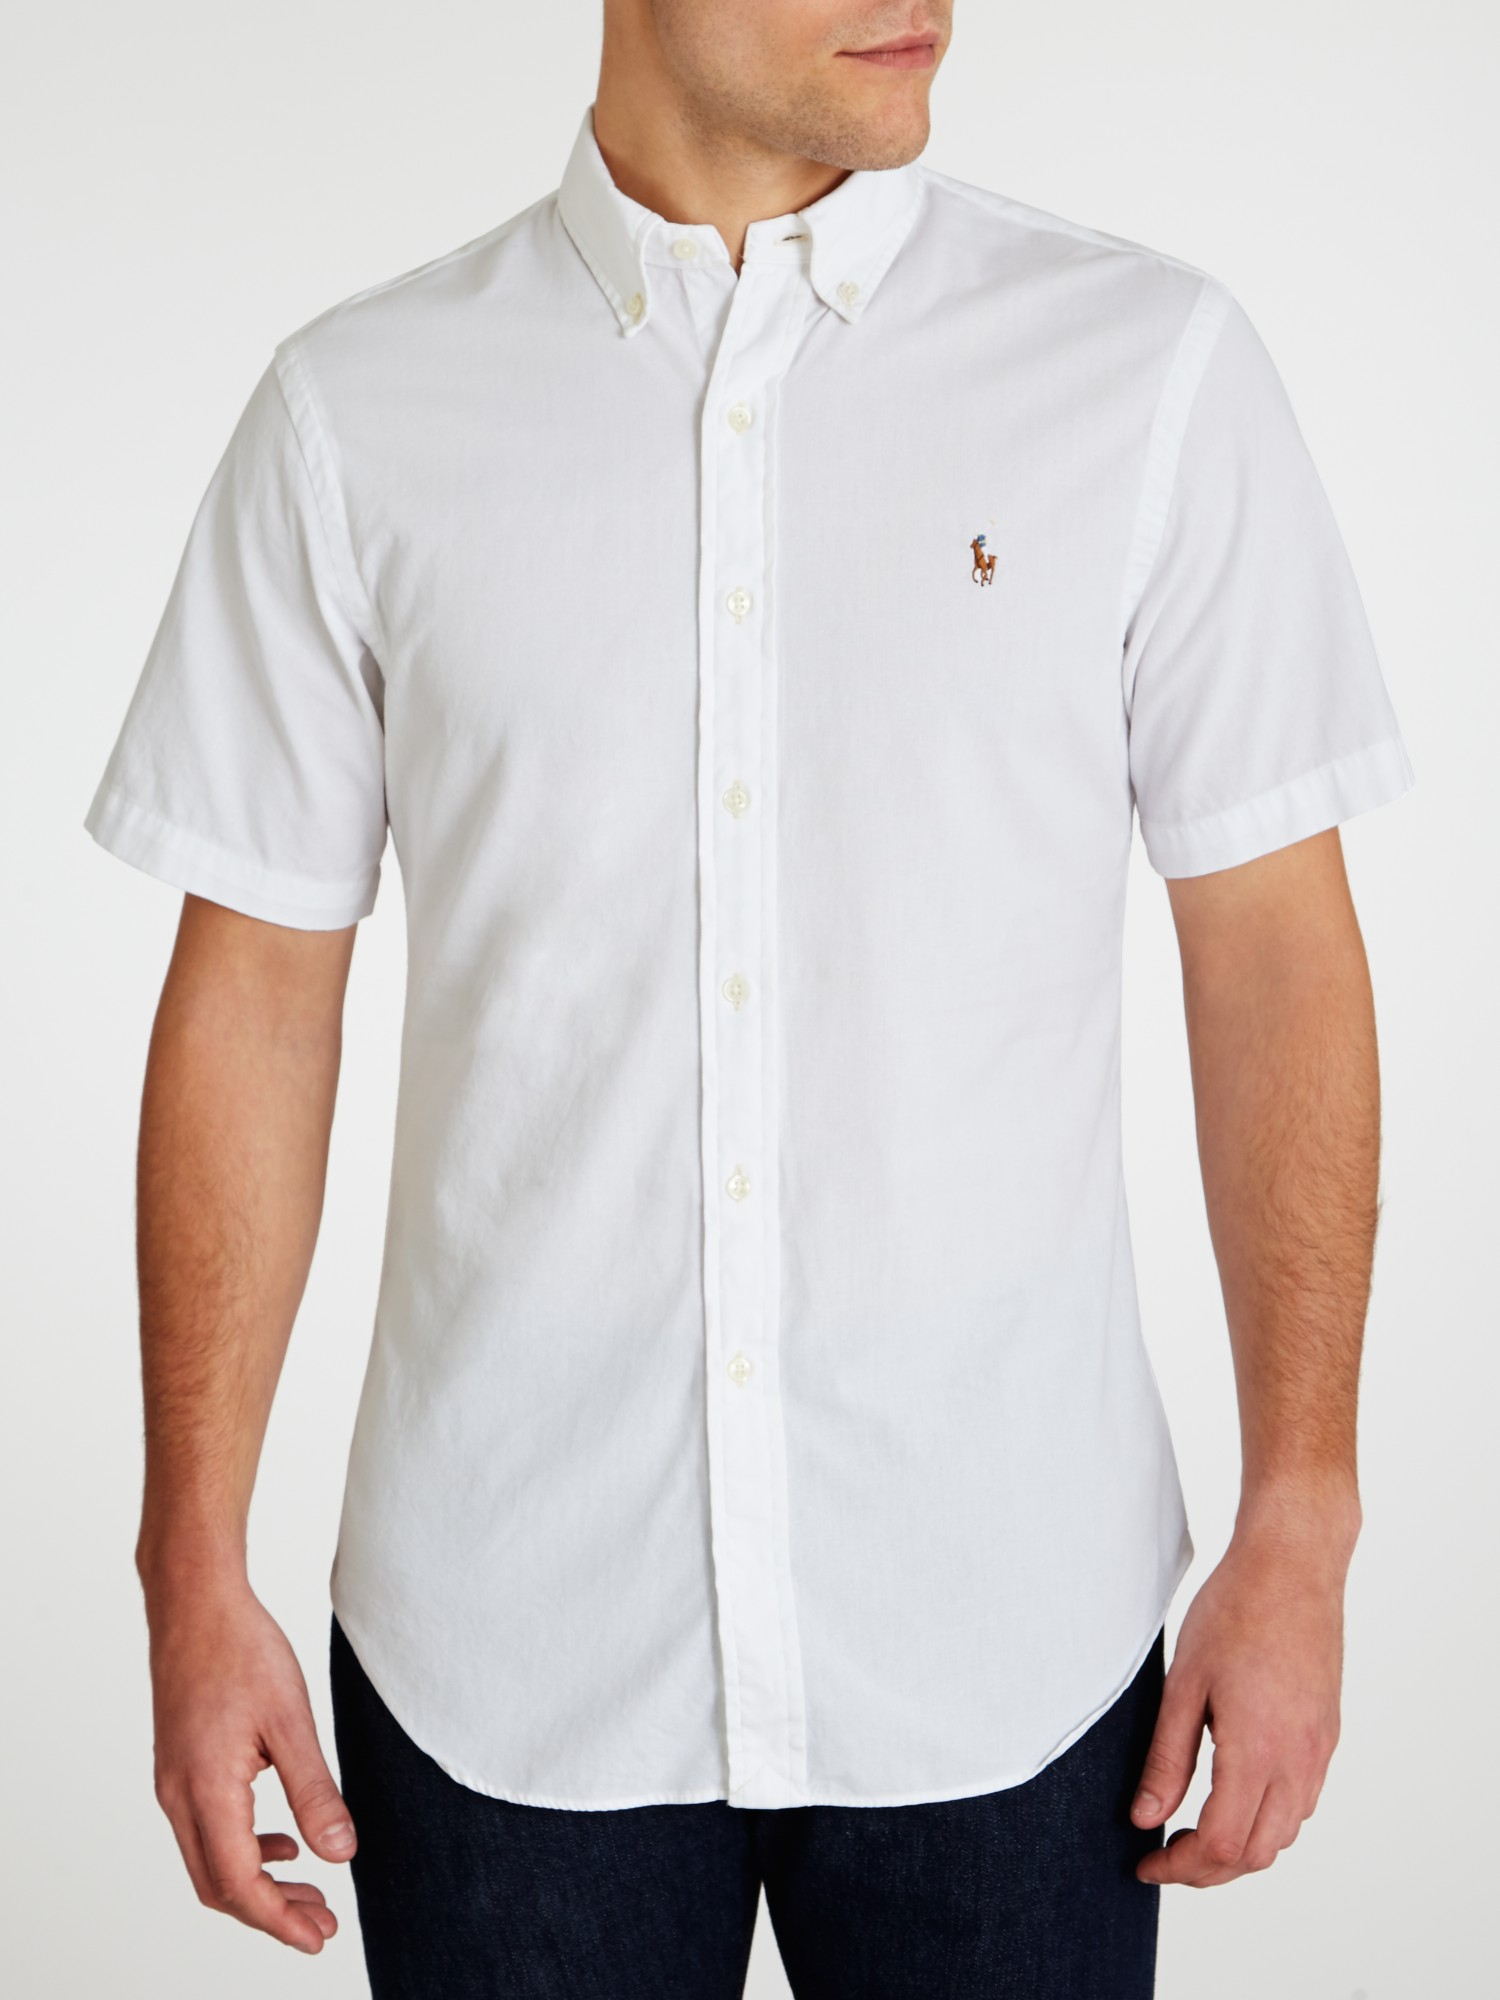 Polo Ralph Lauren Chambray Short Sleeve Shirt in White for Men - Lyst